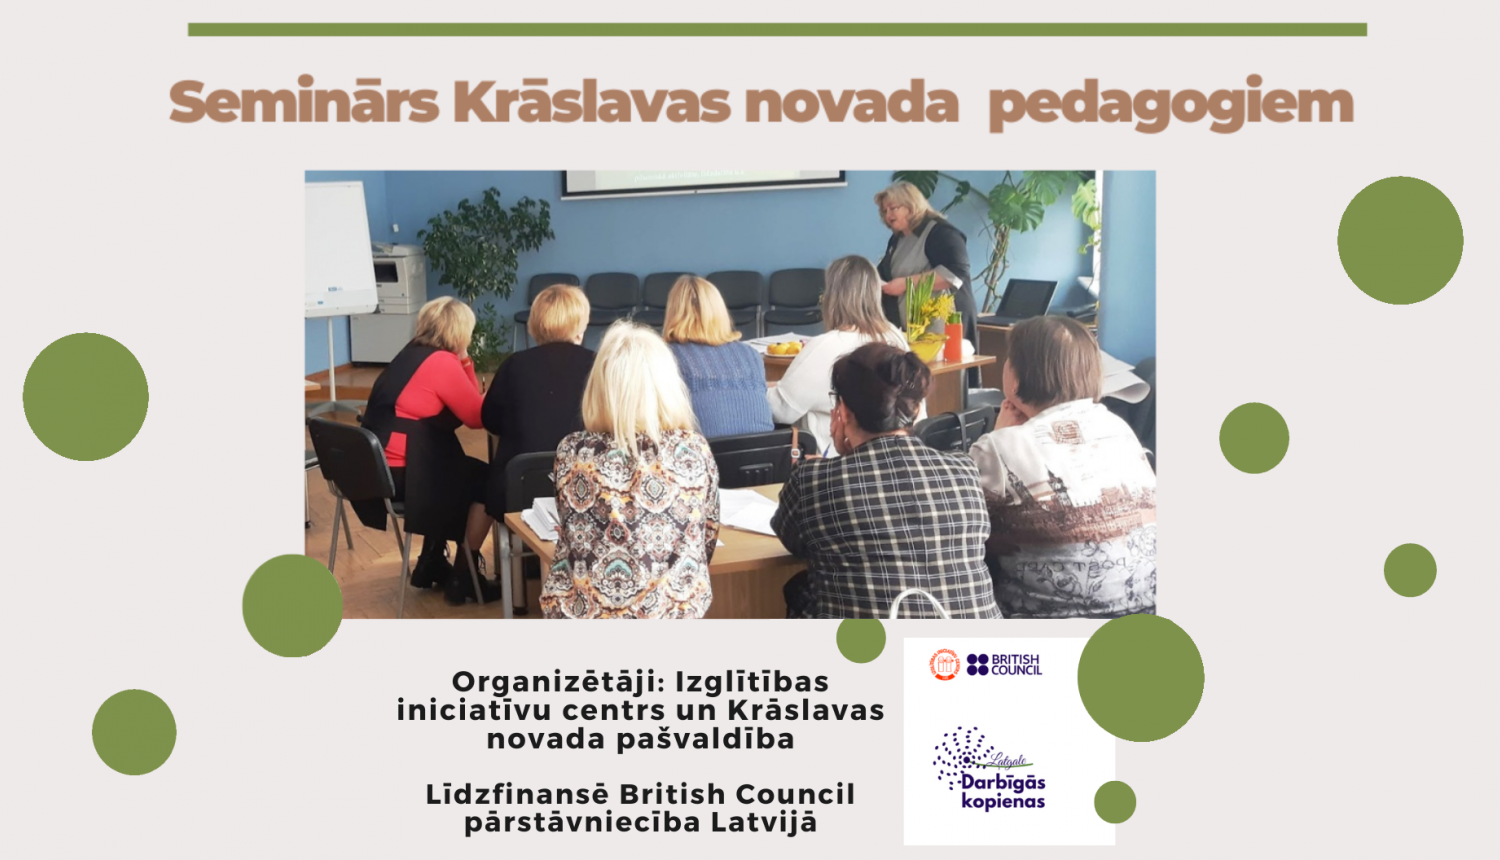 Foto ar cilvēkiem, kas klausās lekciju. Uzraksts "Seminārs Krāslavas novada pedagogiem", Izglītības iniciatīvu centra, British Council, Darbīgās kopienas Latgale logo